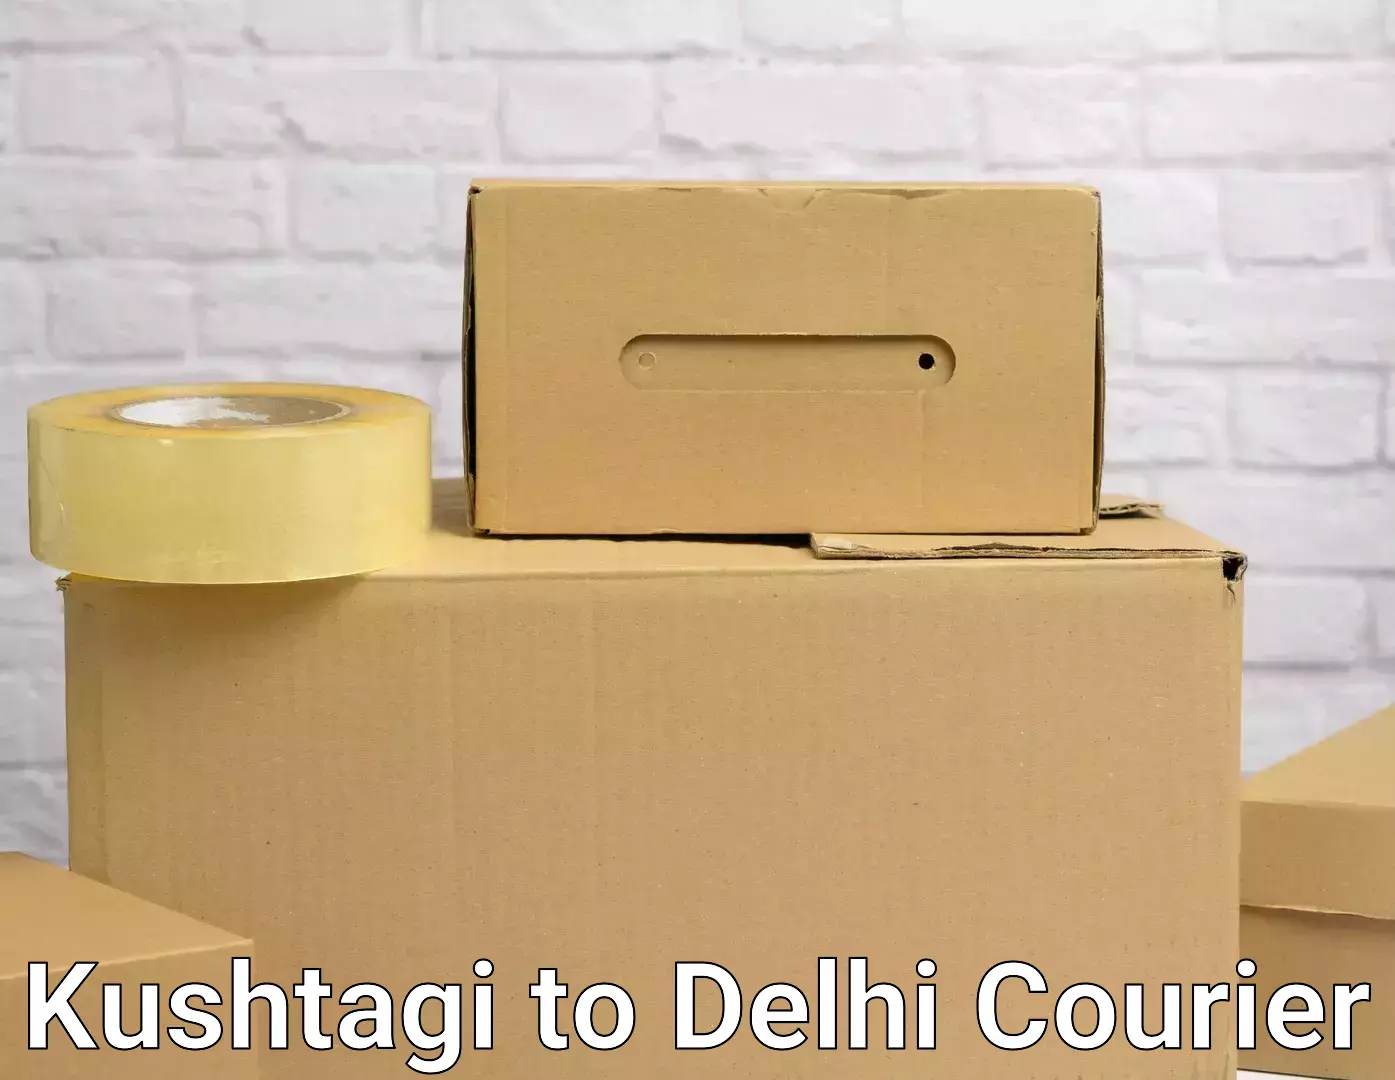 Furniture relocation experts Kushtagi to Delhi